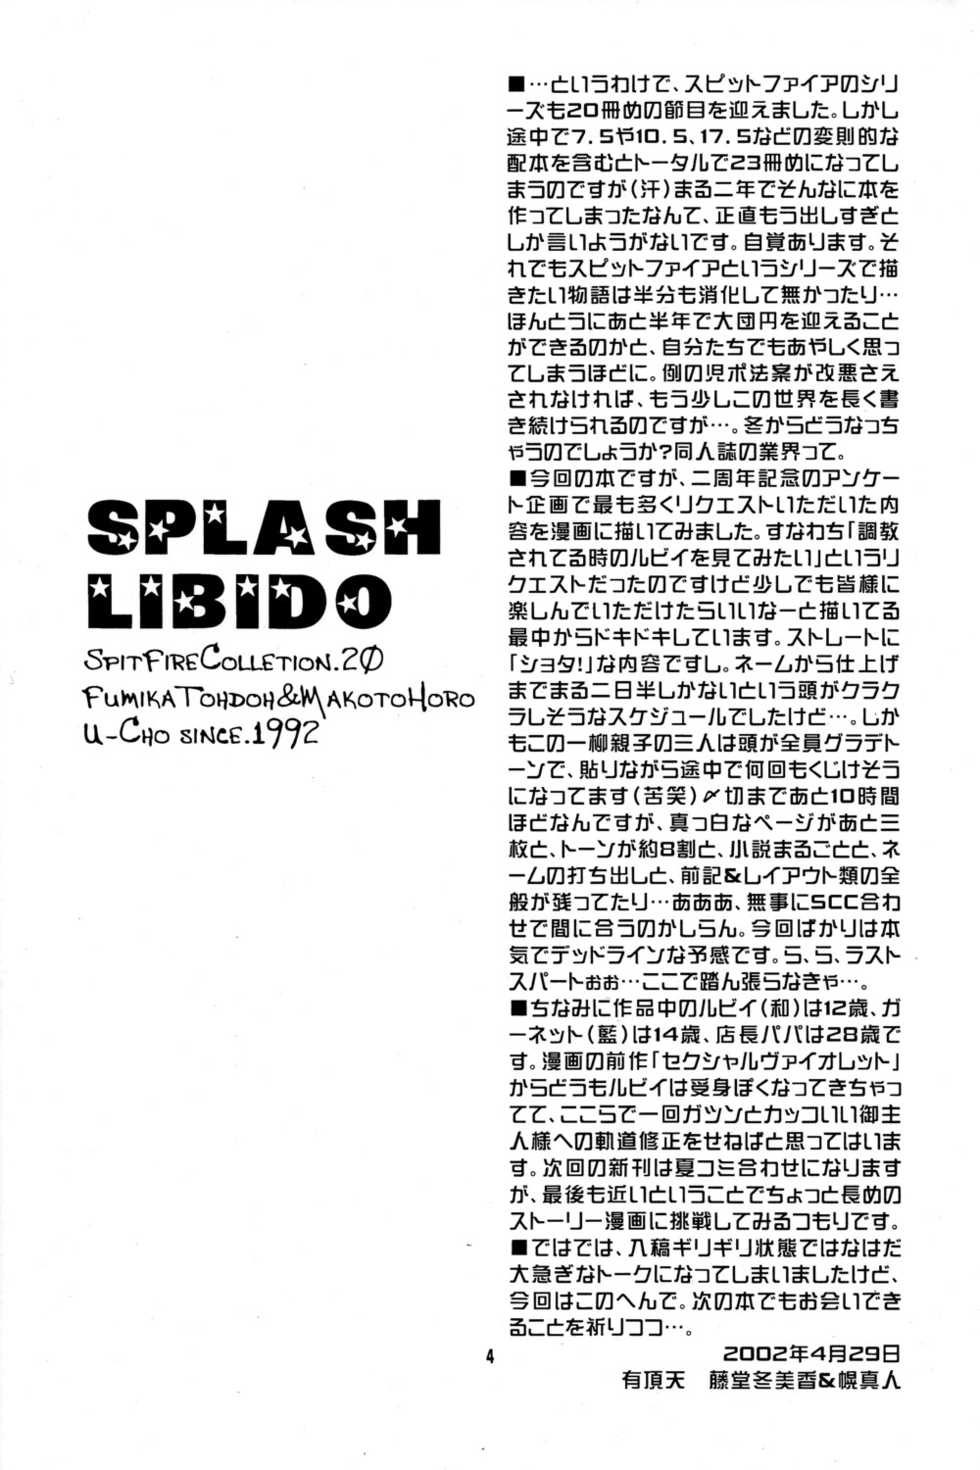 [Luciferhood (Uchoten)] Splash Libido (Spitfire Collection 20) - Page 4